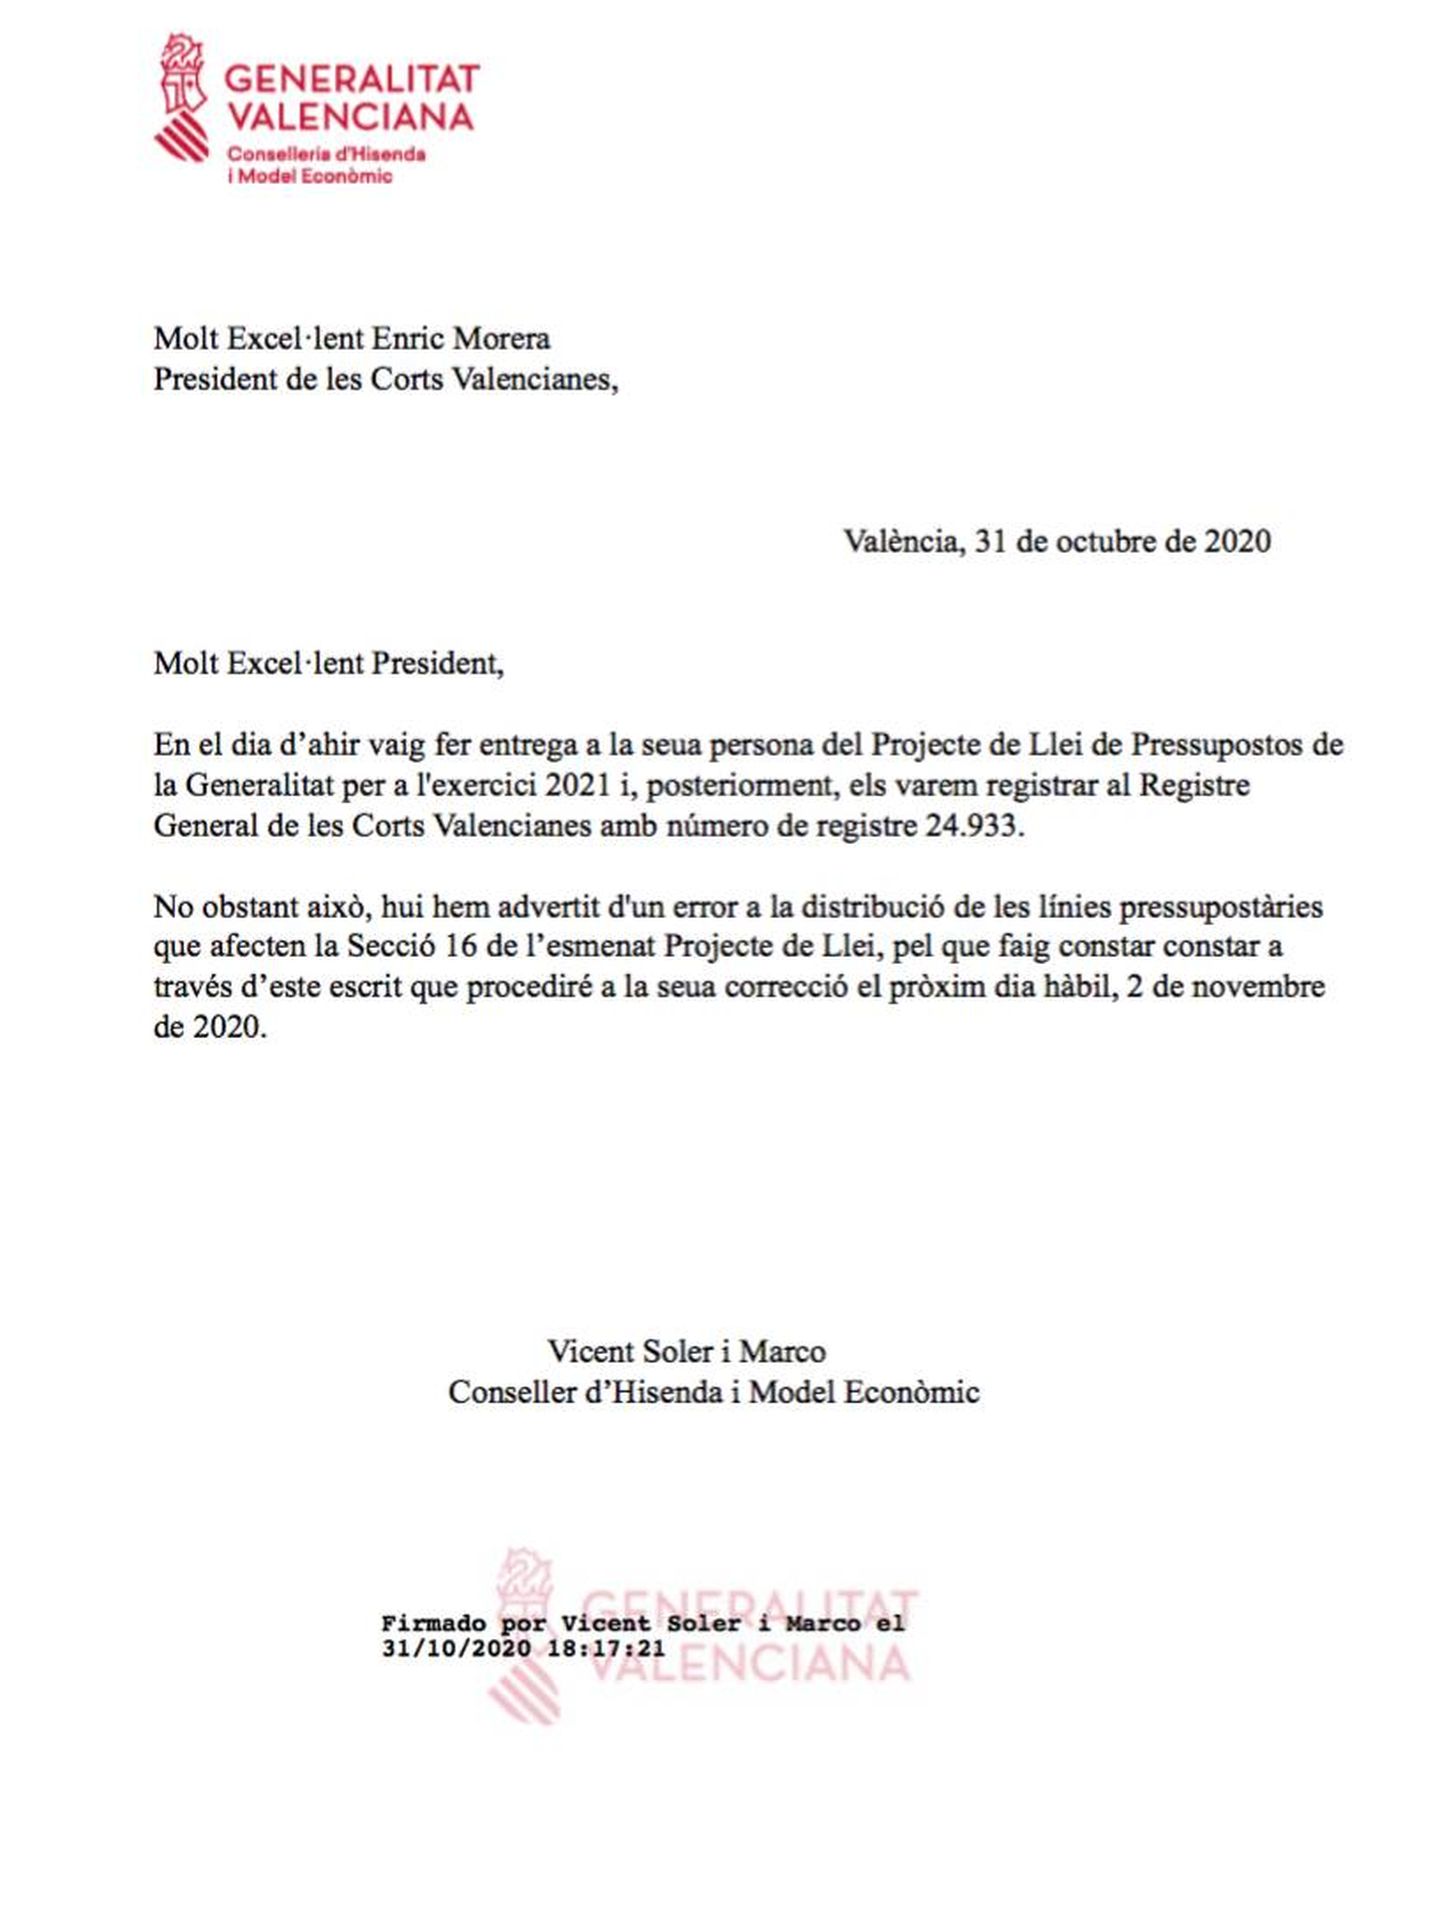 Pinche para ver la carta remitida por Vicent Soler a las Cortes en la que admite “errores de distribución“. 